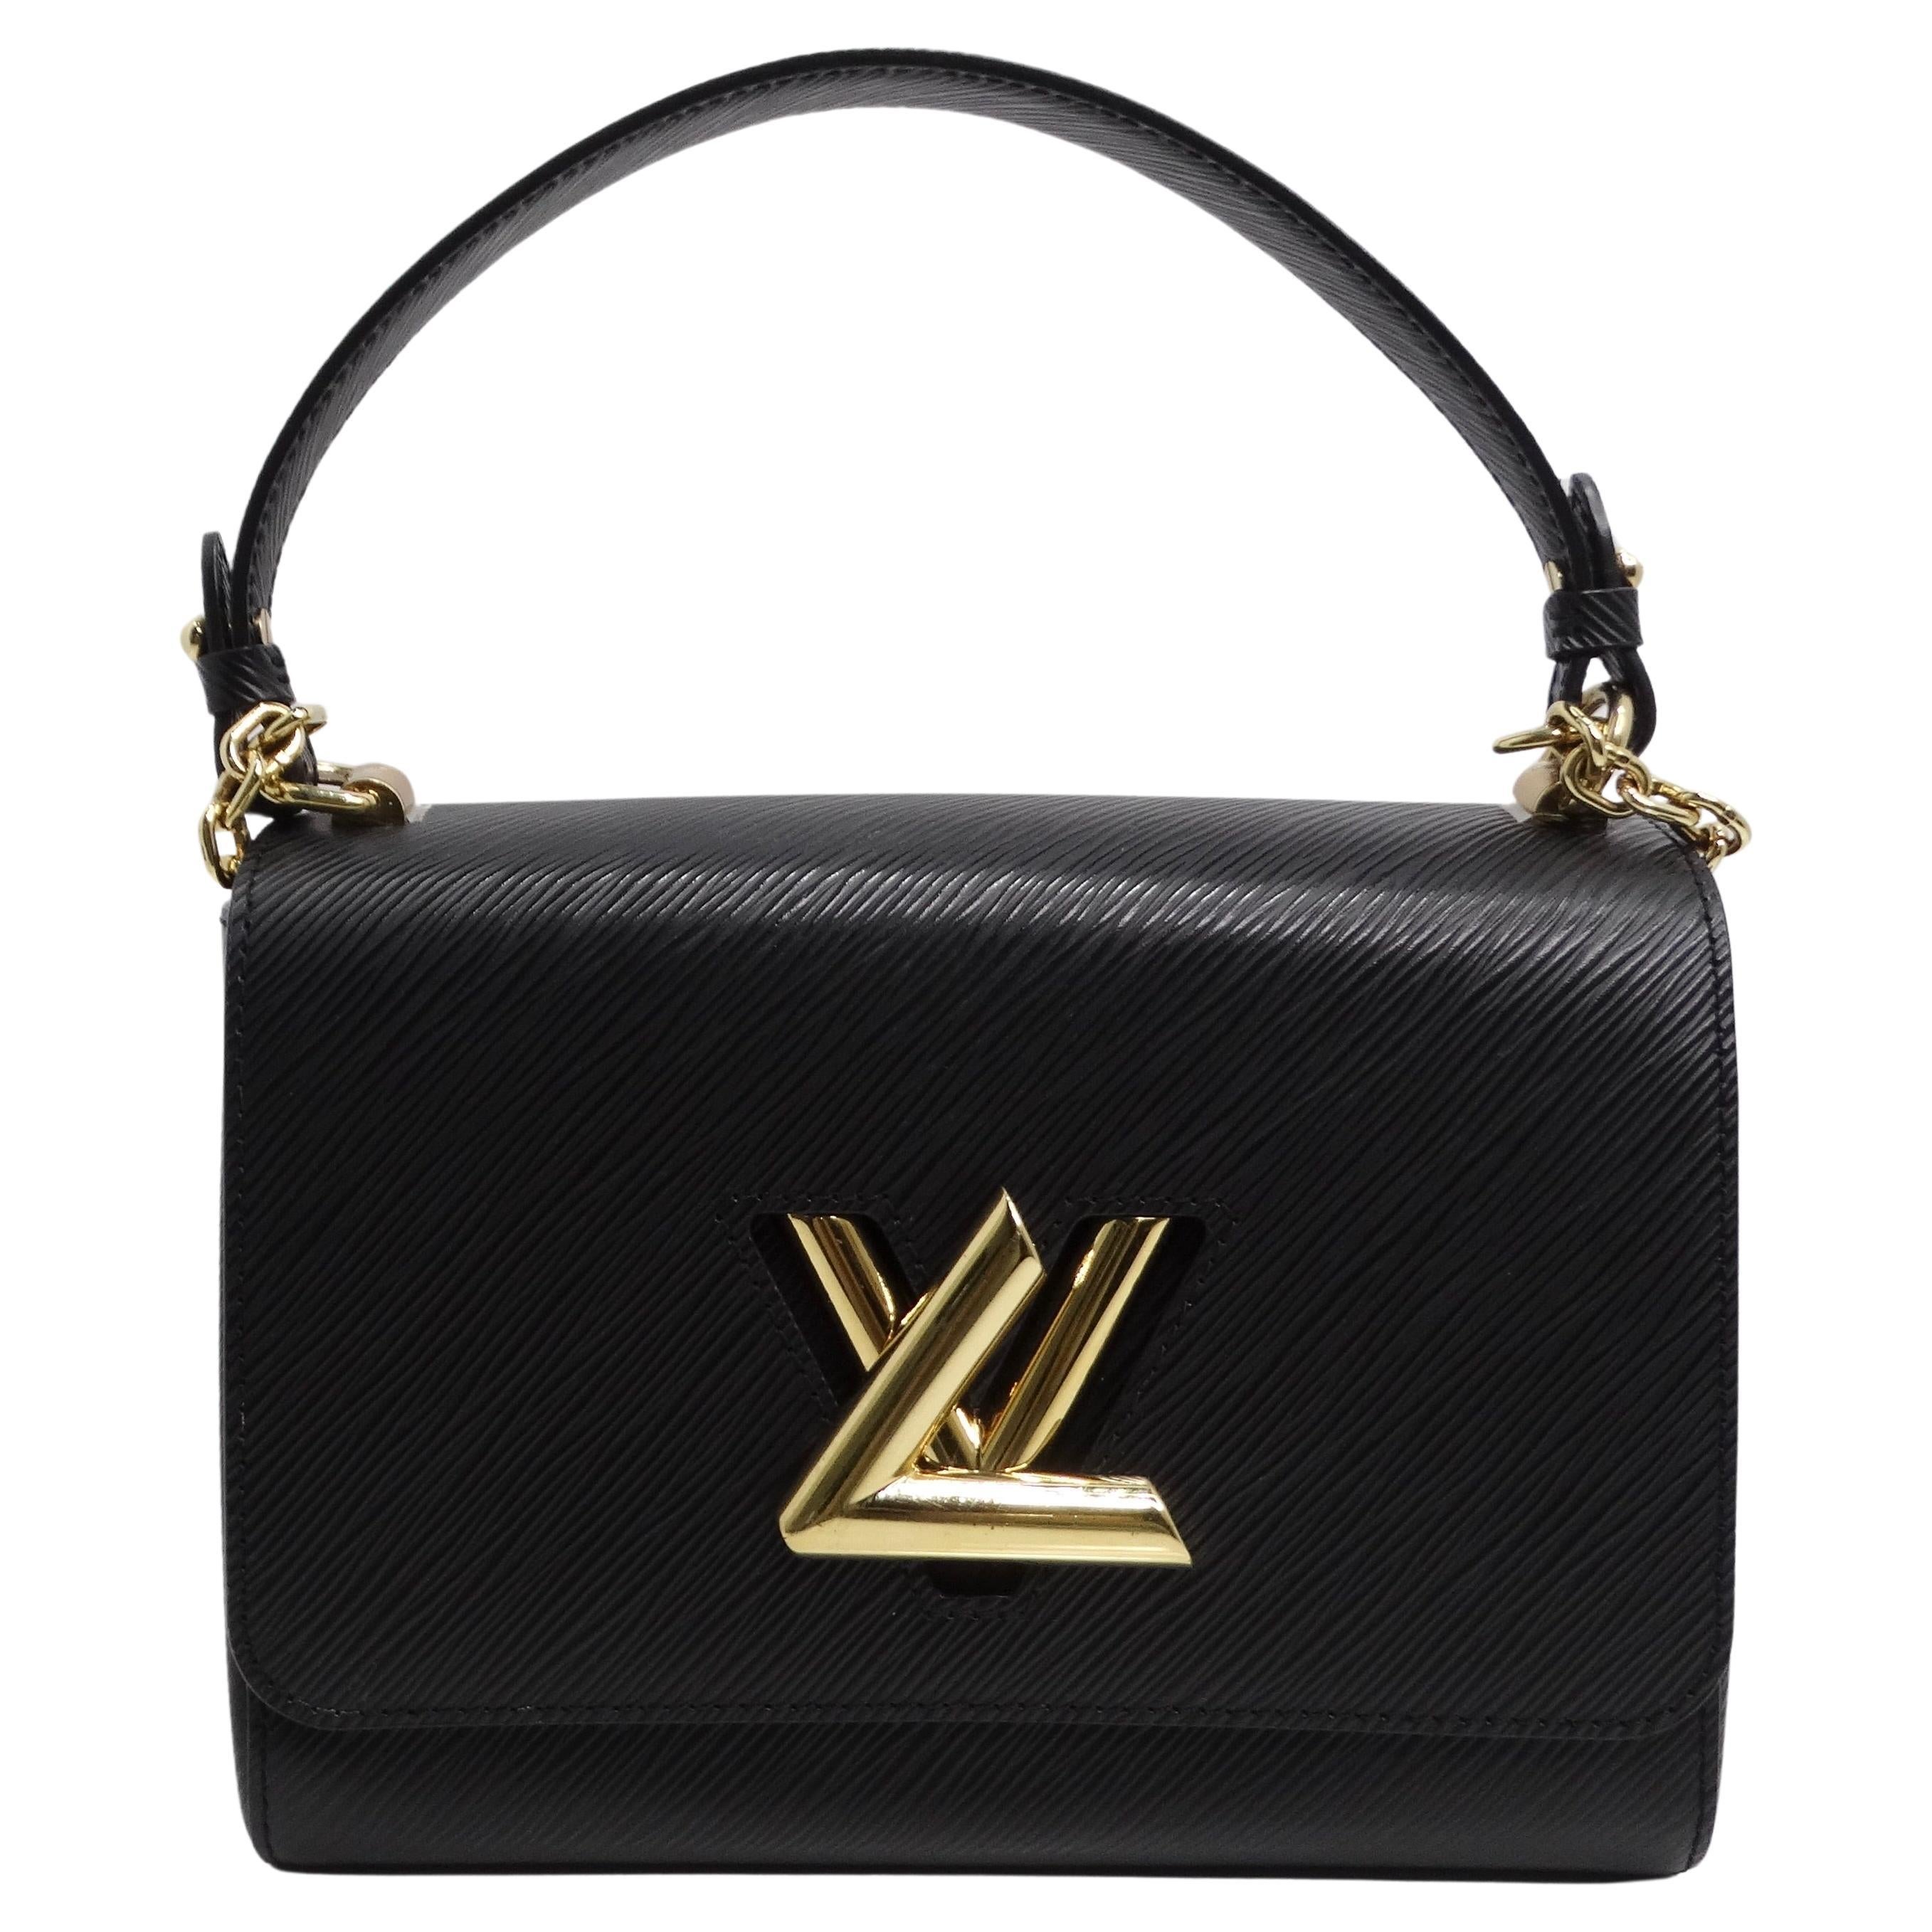 Is Louis Vuitton haute couture?